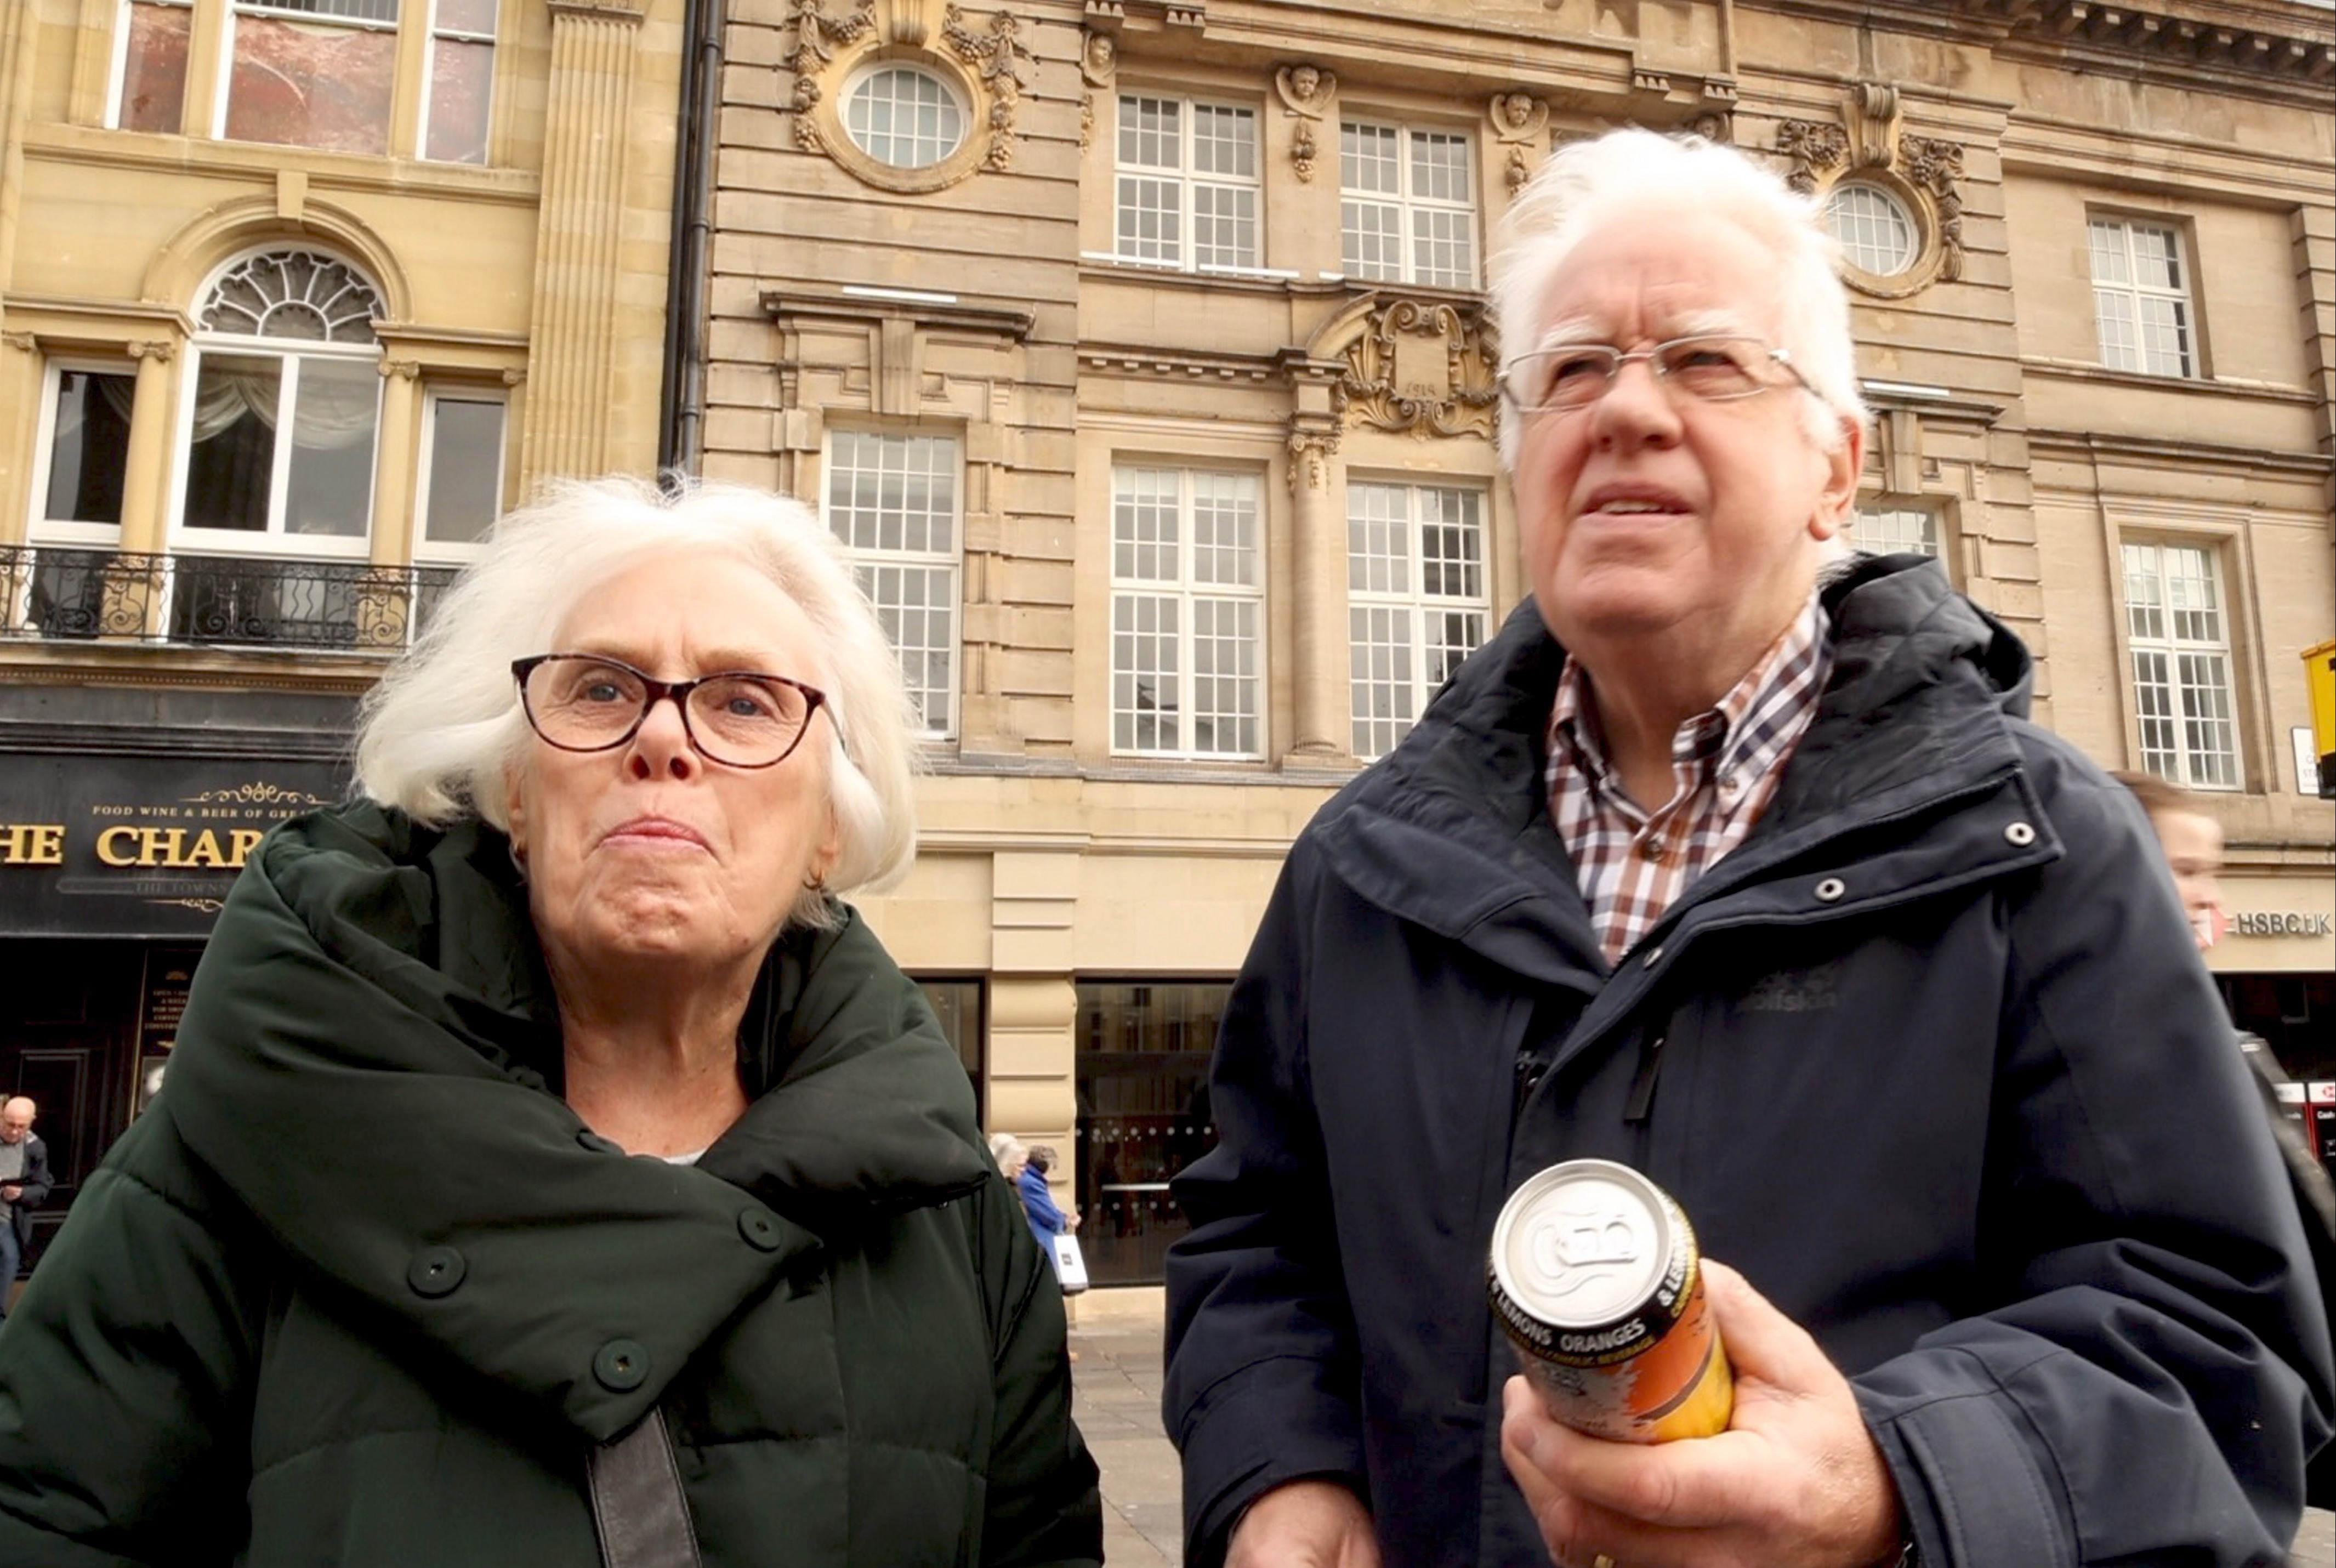 Alan, 77, und Maureen Kent, 76, sagten, sie würden das Getränk nicht für alkoholisch halten